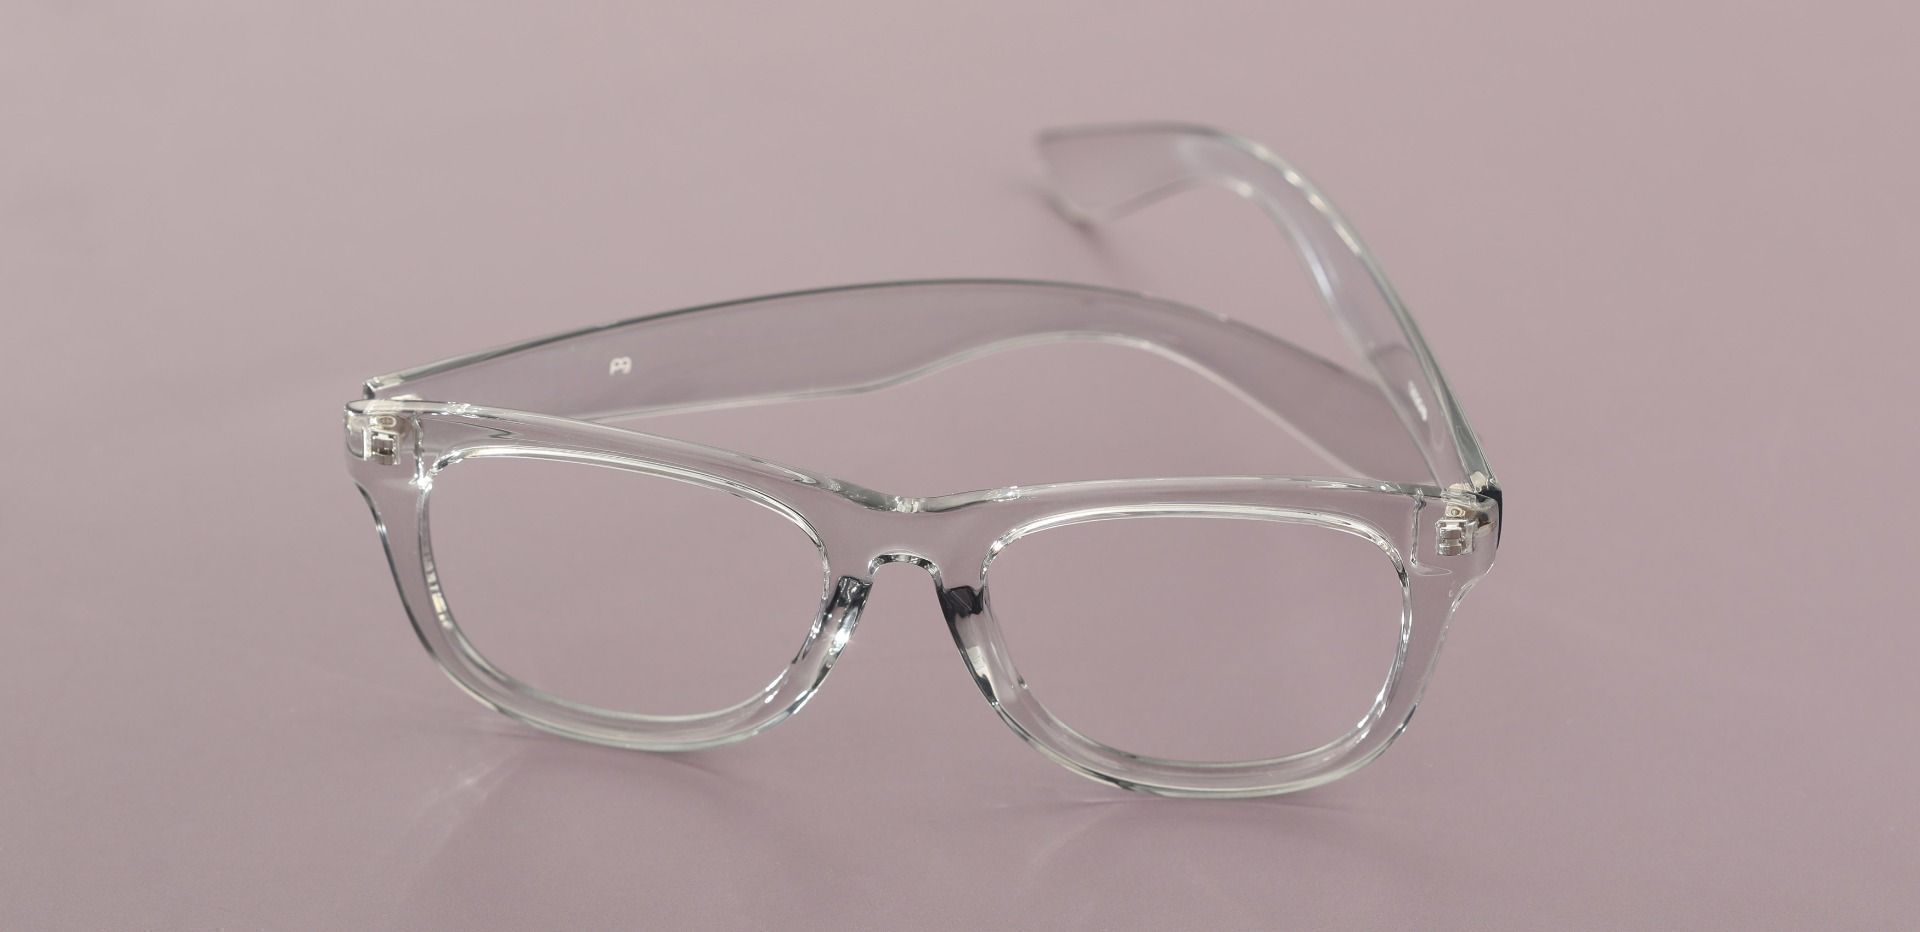 Callie Square Prescription Glasses - Gray